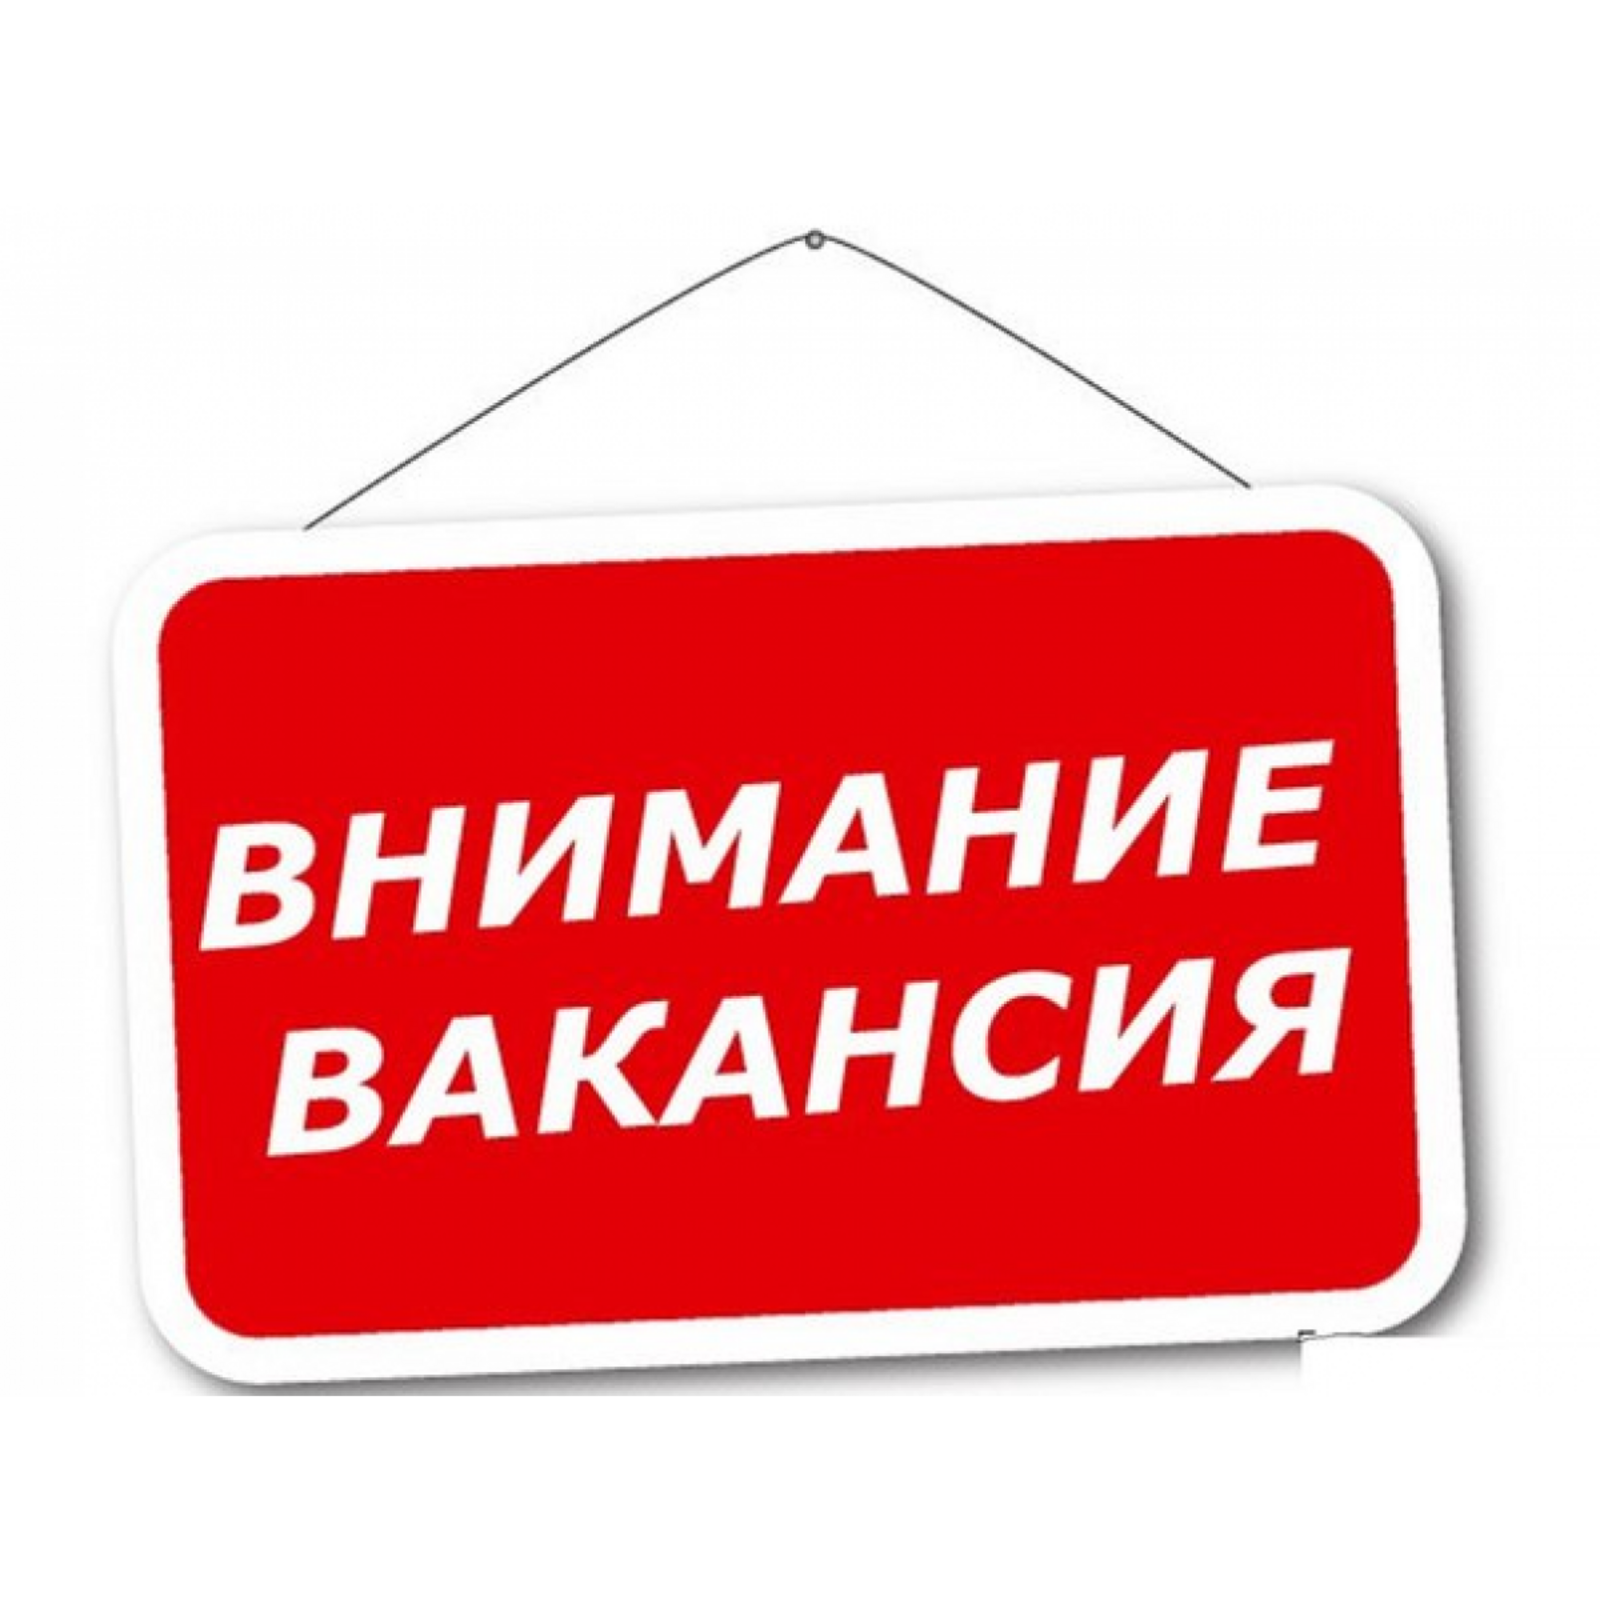 Администрация Кугарчинского района  объявляет конкурс на замещение вакантной должности  - главный специалист